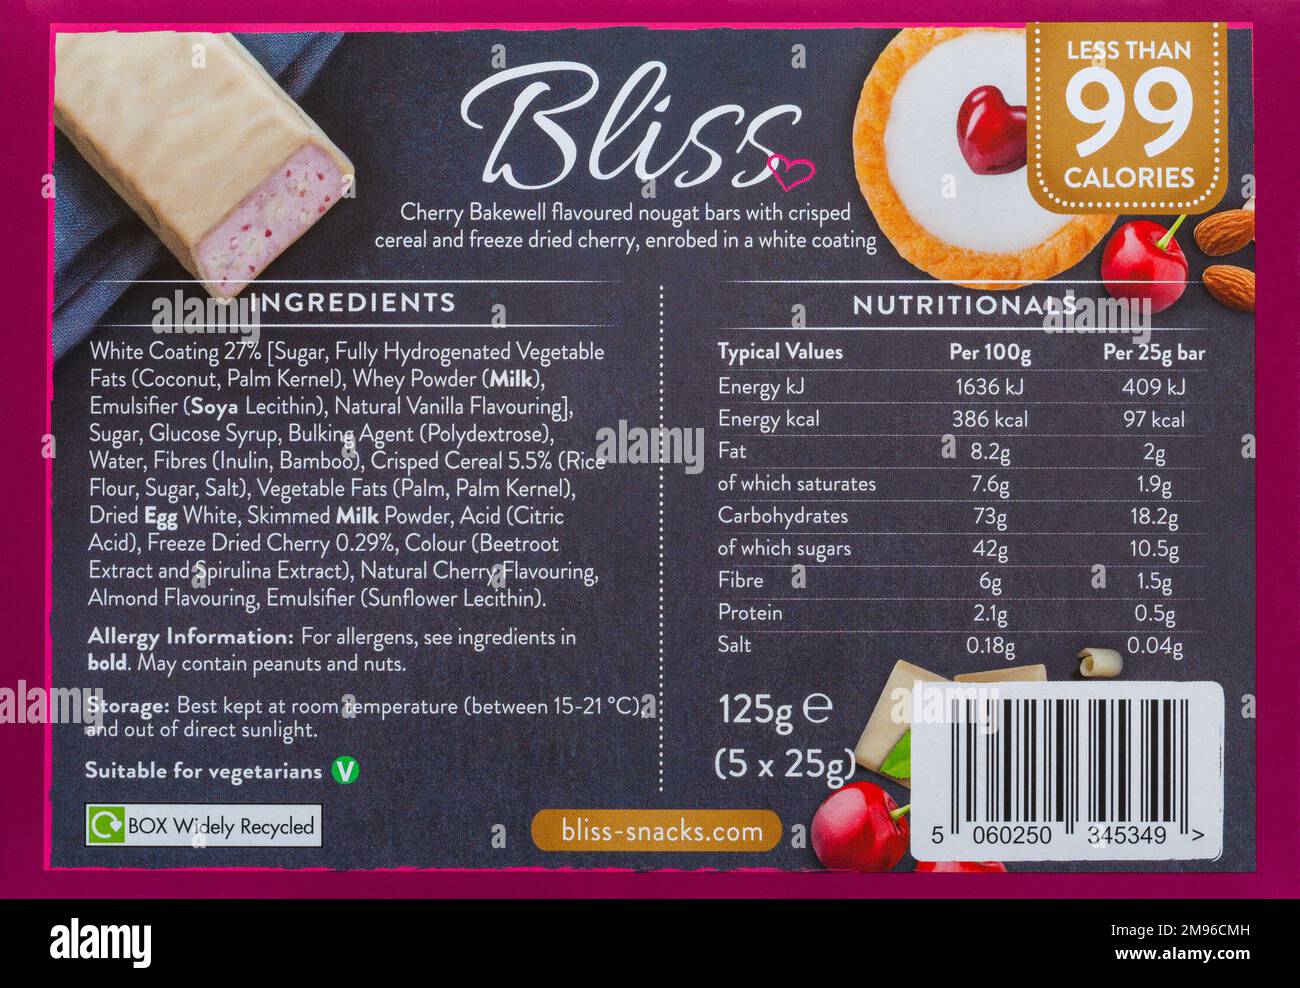 Liste des ingrédients alimentaires au dos du paquet de barres de fouet au chocolat blanc Bliss et à la cerise bakewell - étiquette d'emballage d'étiquetage des aliments Banque D'Images